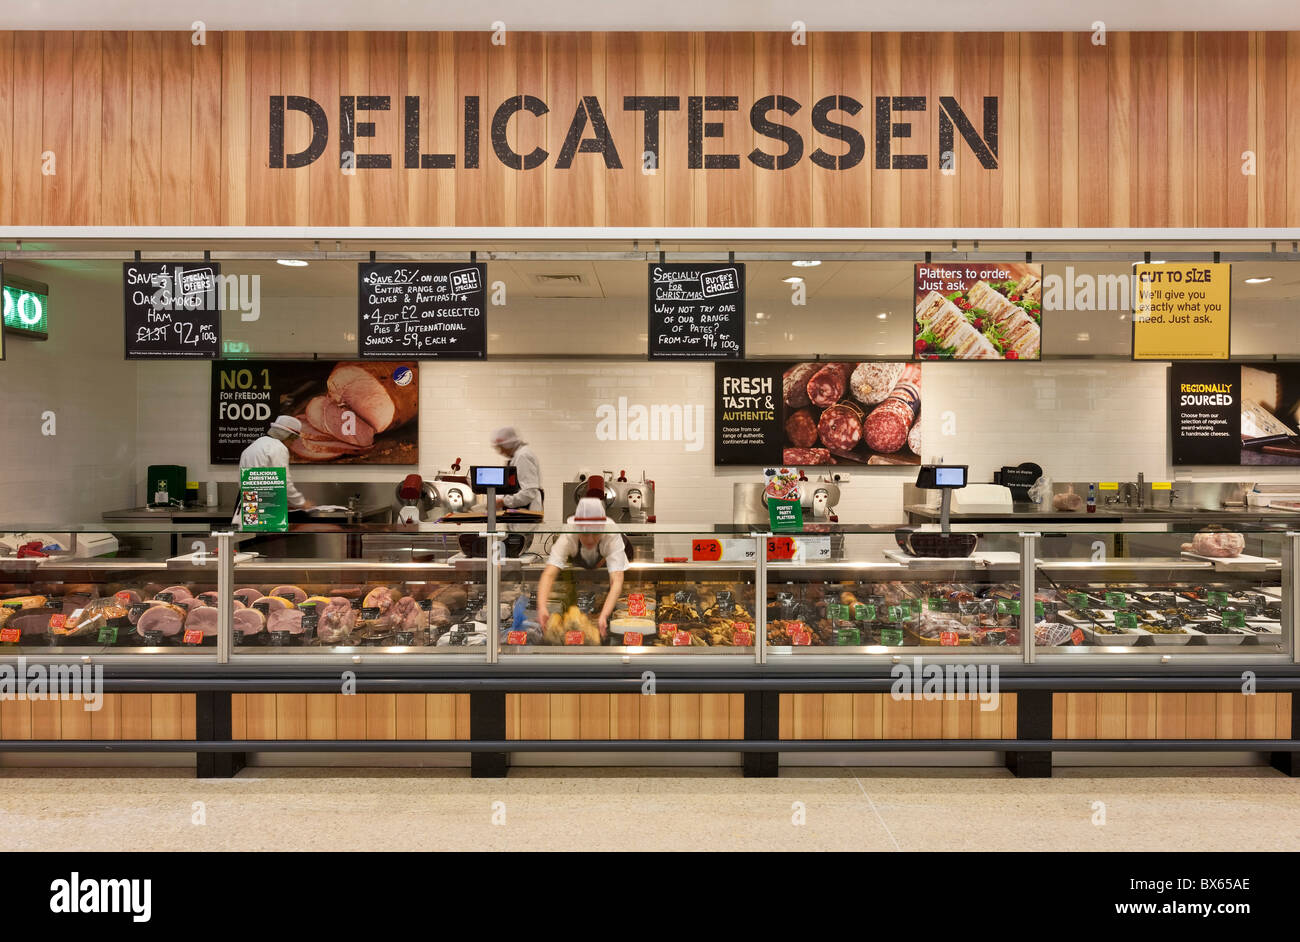 Delicatessen counter in a supermarket. Stock Photo